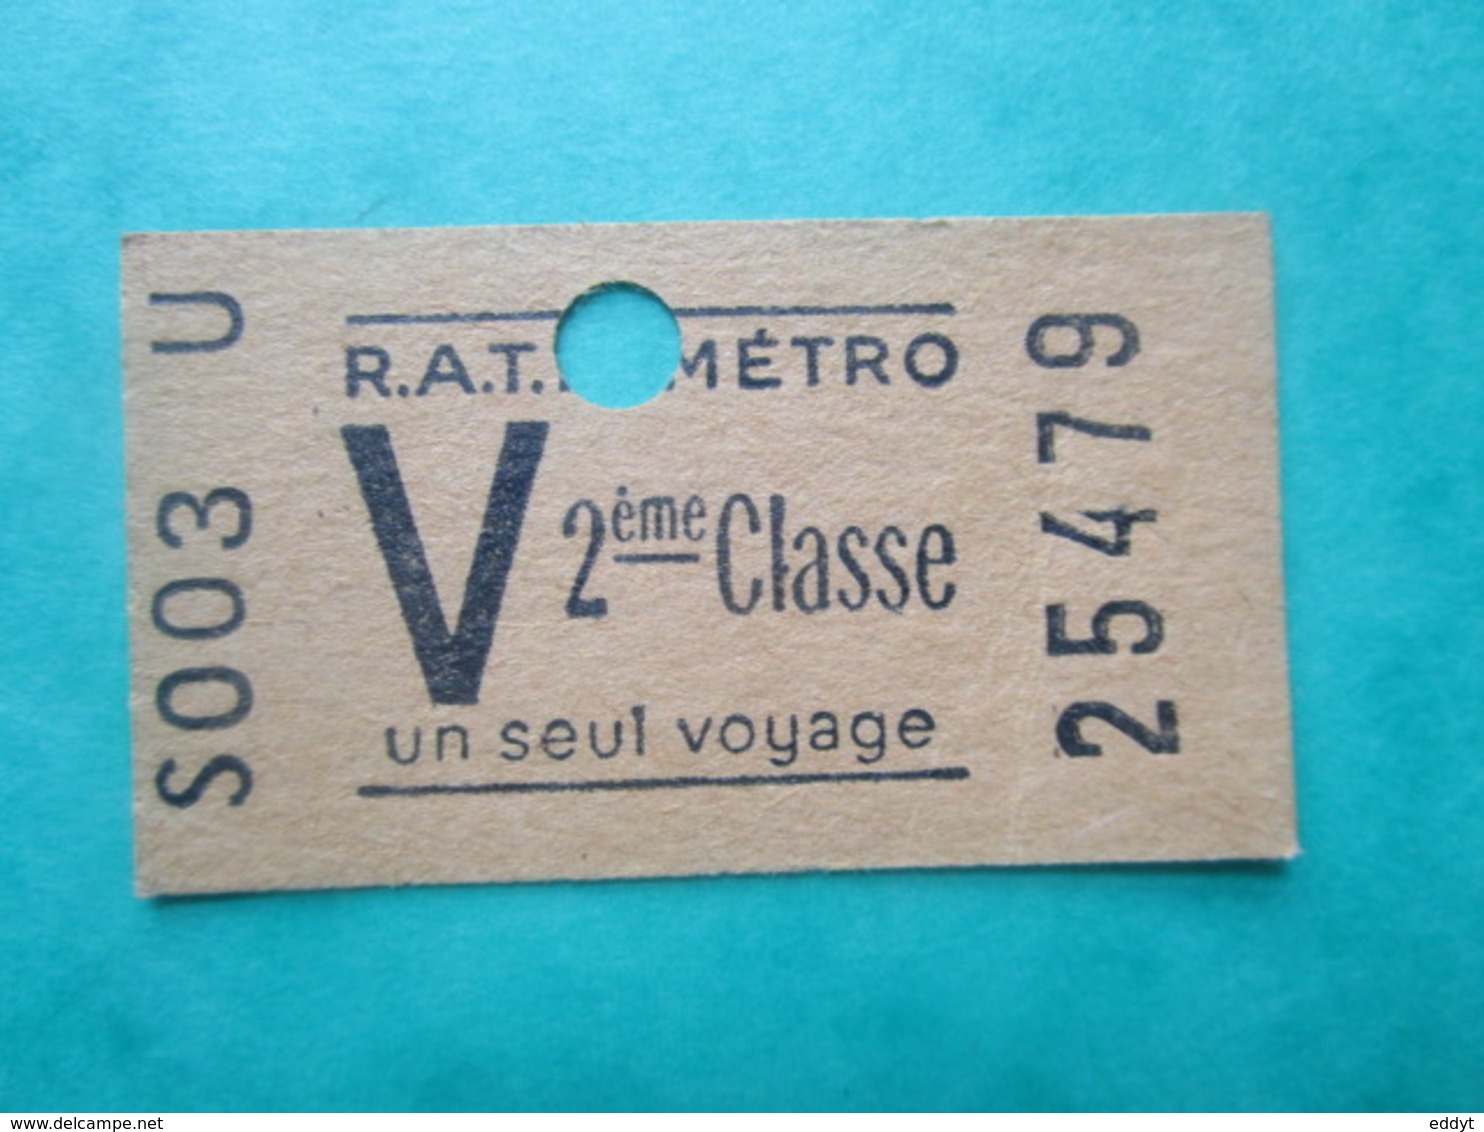 TICKET  Métro  RATP  PARIS " V "  - 2° Classe - UN SEUL VOYAGE   - 1958 - TBE - World